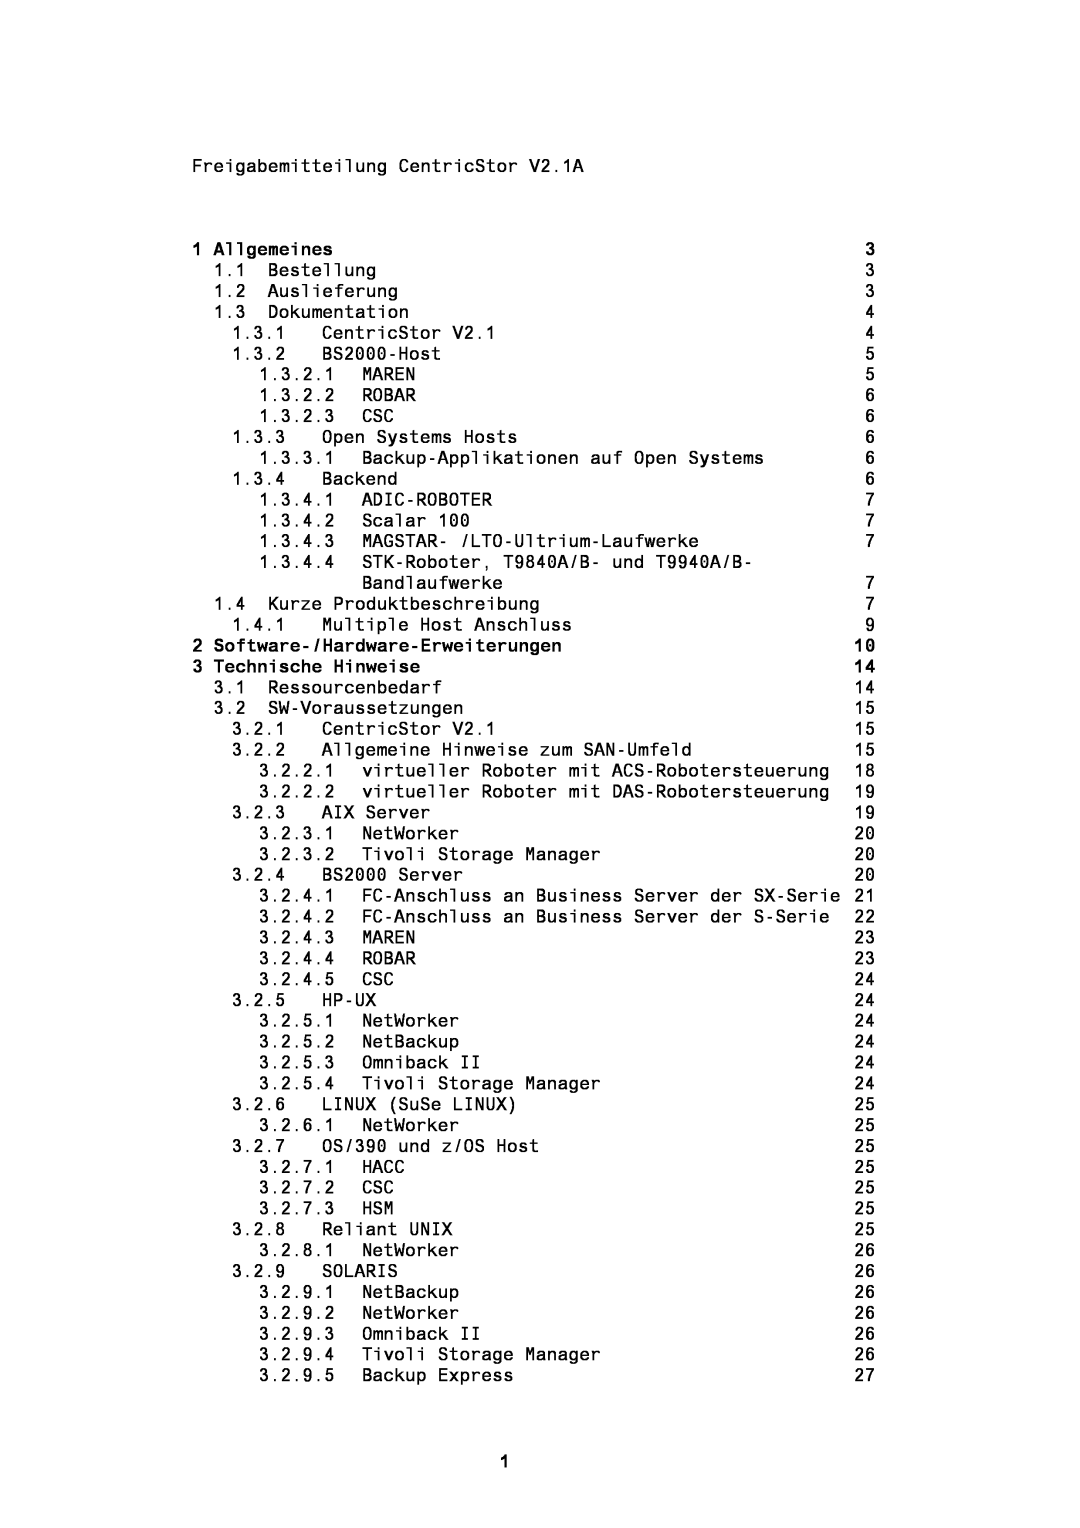 Fujitsu BS2000/OSD manual Allgemeines, Software-/Hardware-Erweiterungen, Technische Hinweise 